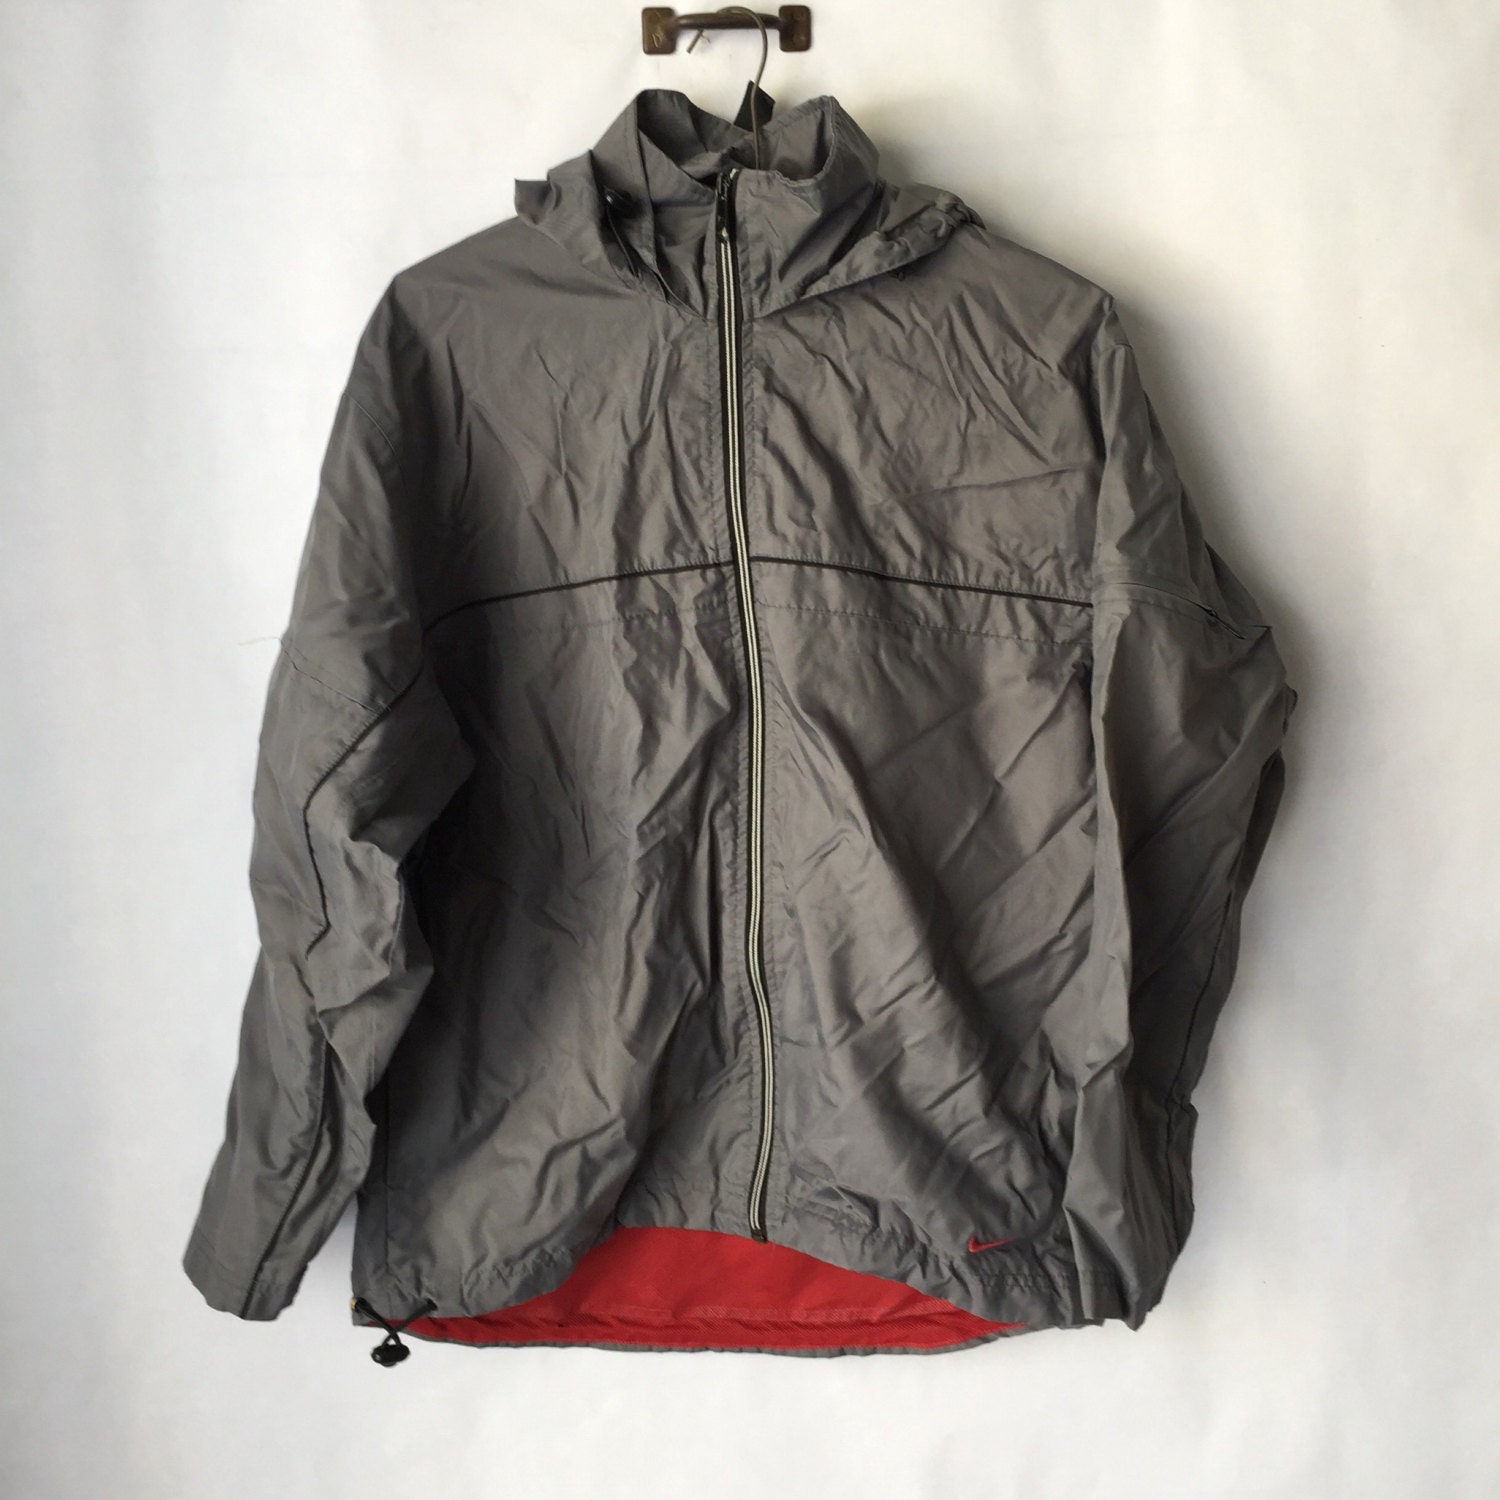 Vintage Nike Jacket Grey Puffer Street Wear Retro Coat